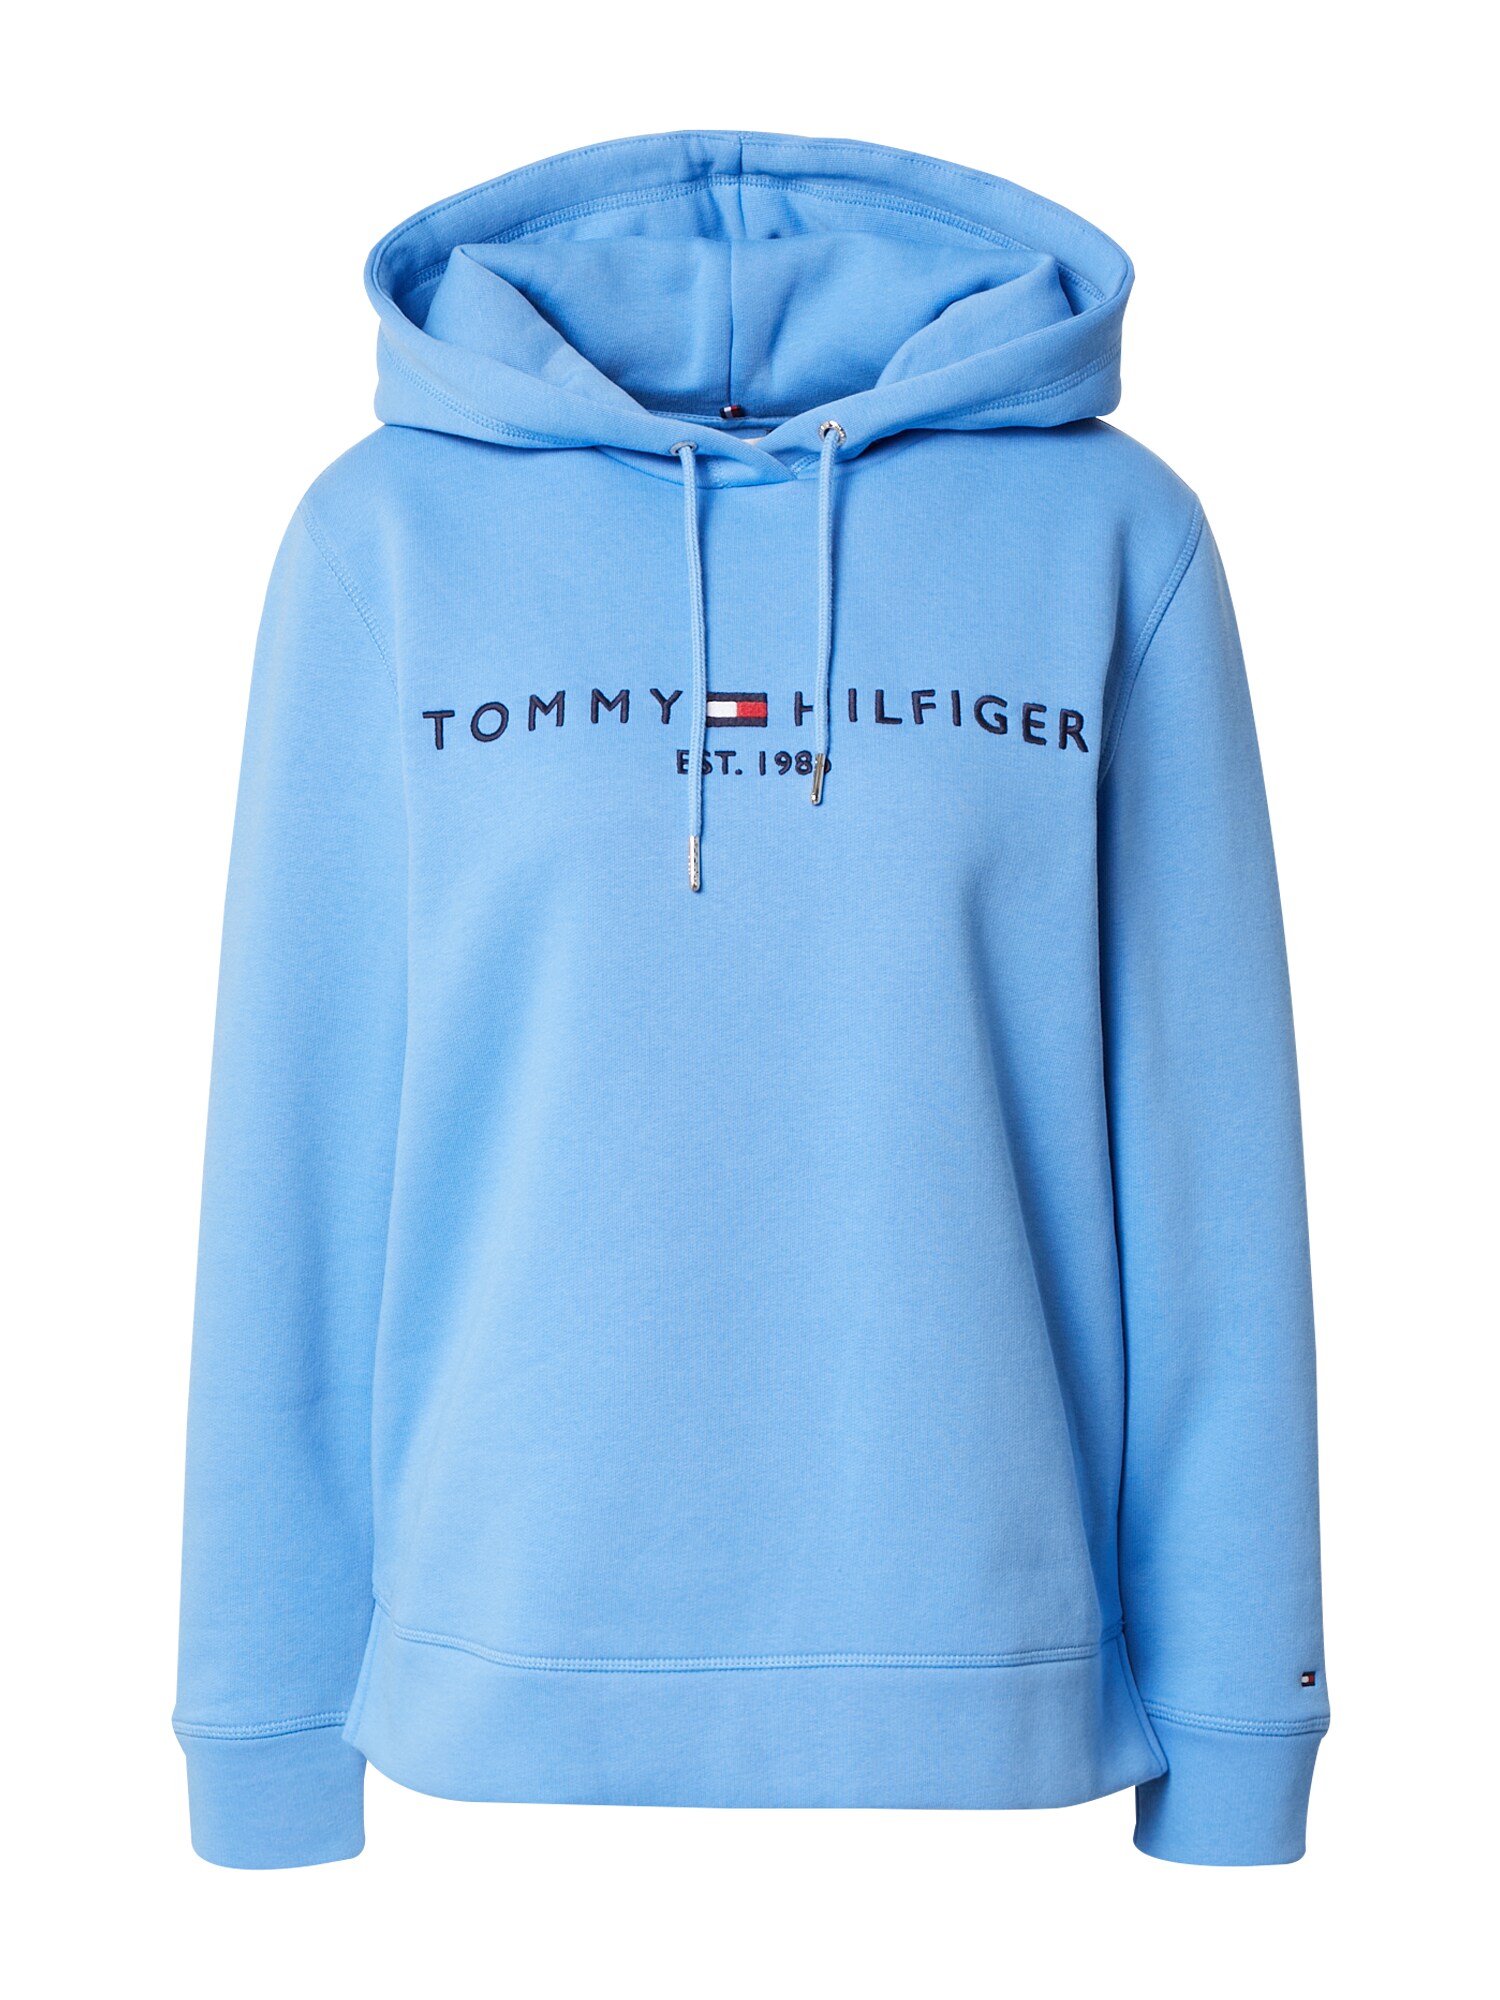 Tommy Hilfiger TOMMY HILFIGER Sweatshirt nachtblau / hellblau / rot / weiß